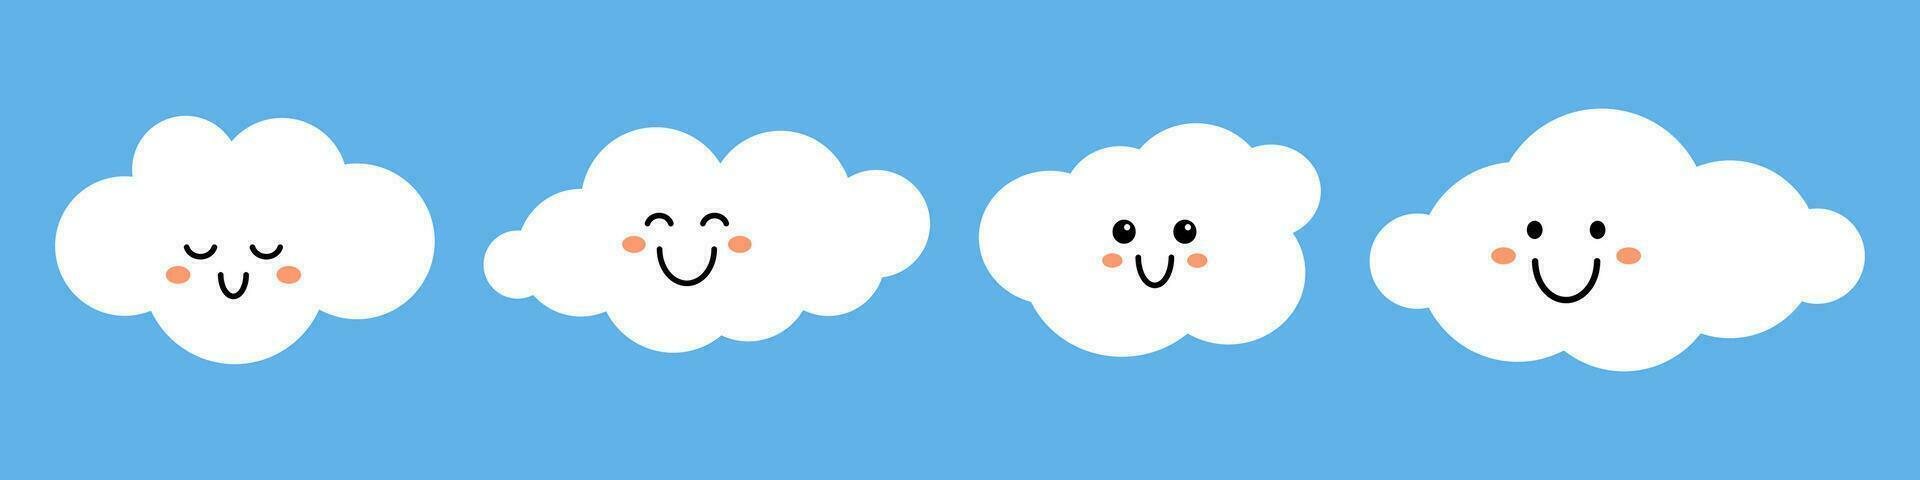 vektor uppsättning av söt vit moln med ansikten på blå bakgrund. söt rolig barn moln samling i platt design. barnslig element.